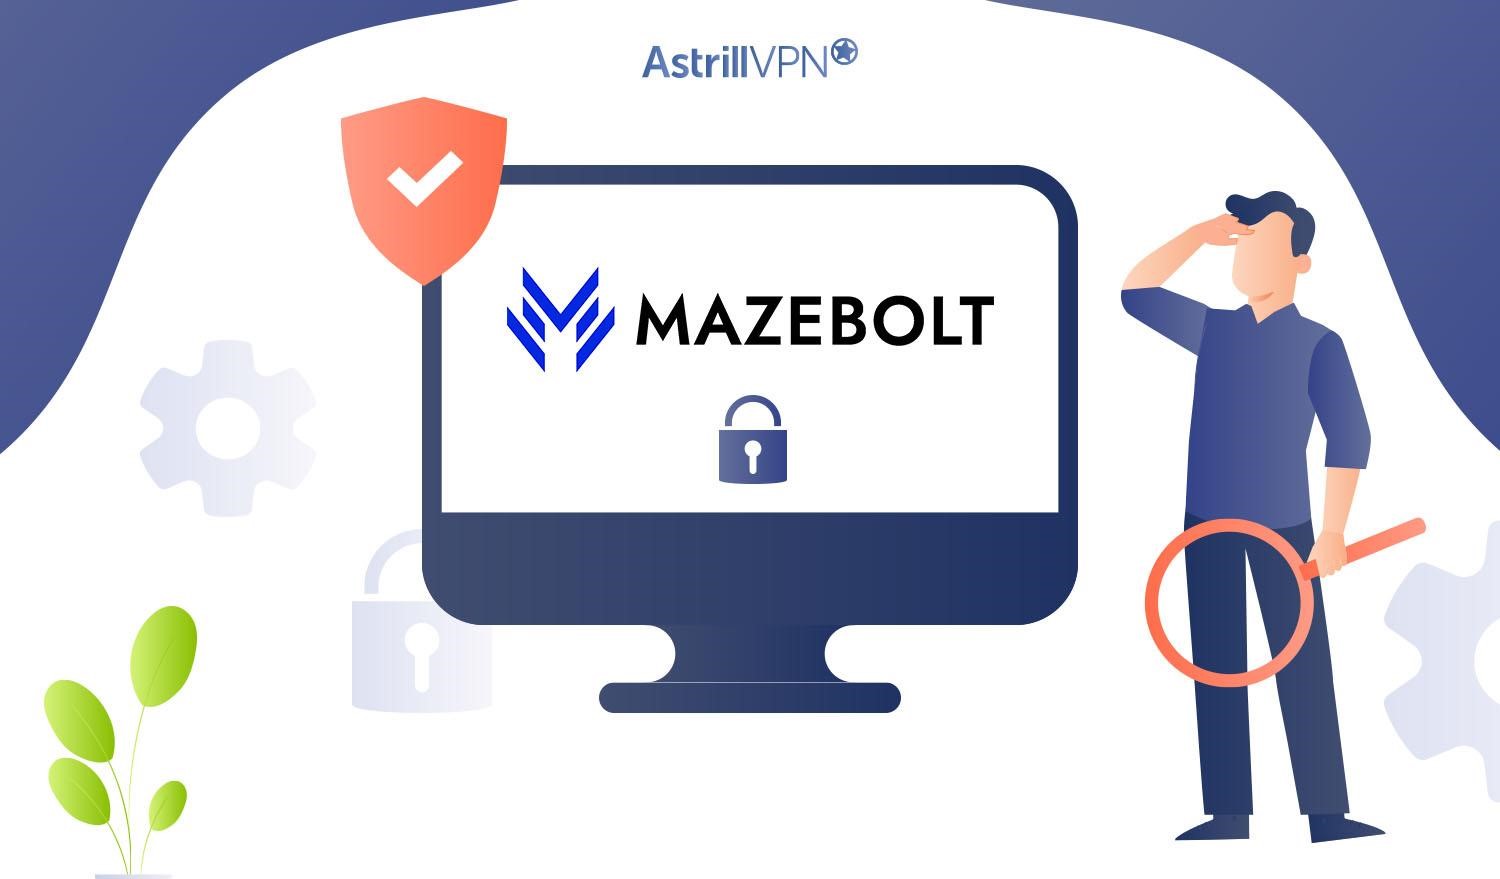 MazeBolt Technologies